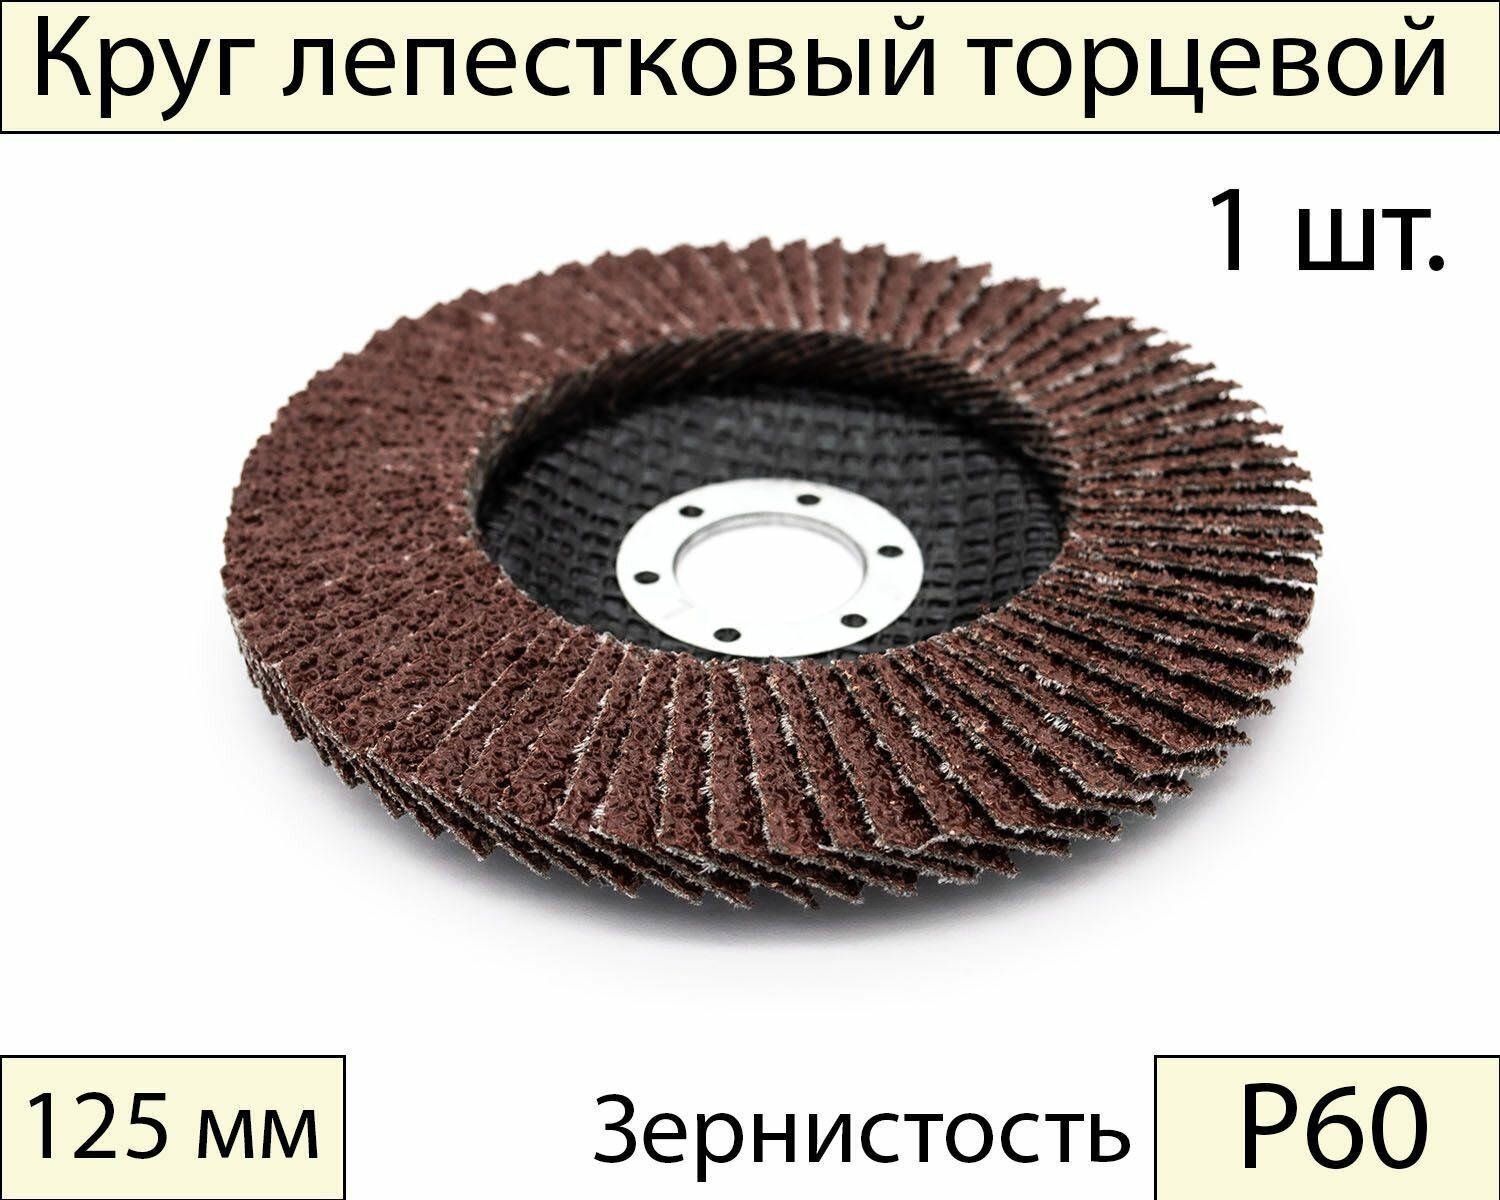 Круги шлифовальные абразивные / лепестковый торцевой диск 125 мм, Р60, 1 шт.